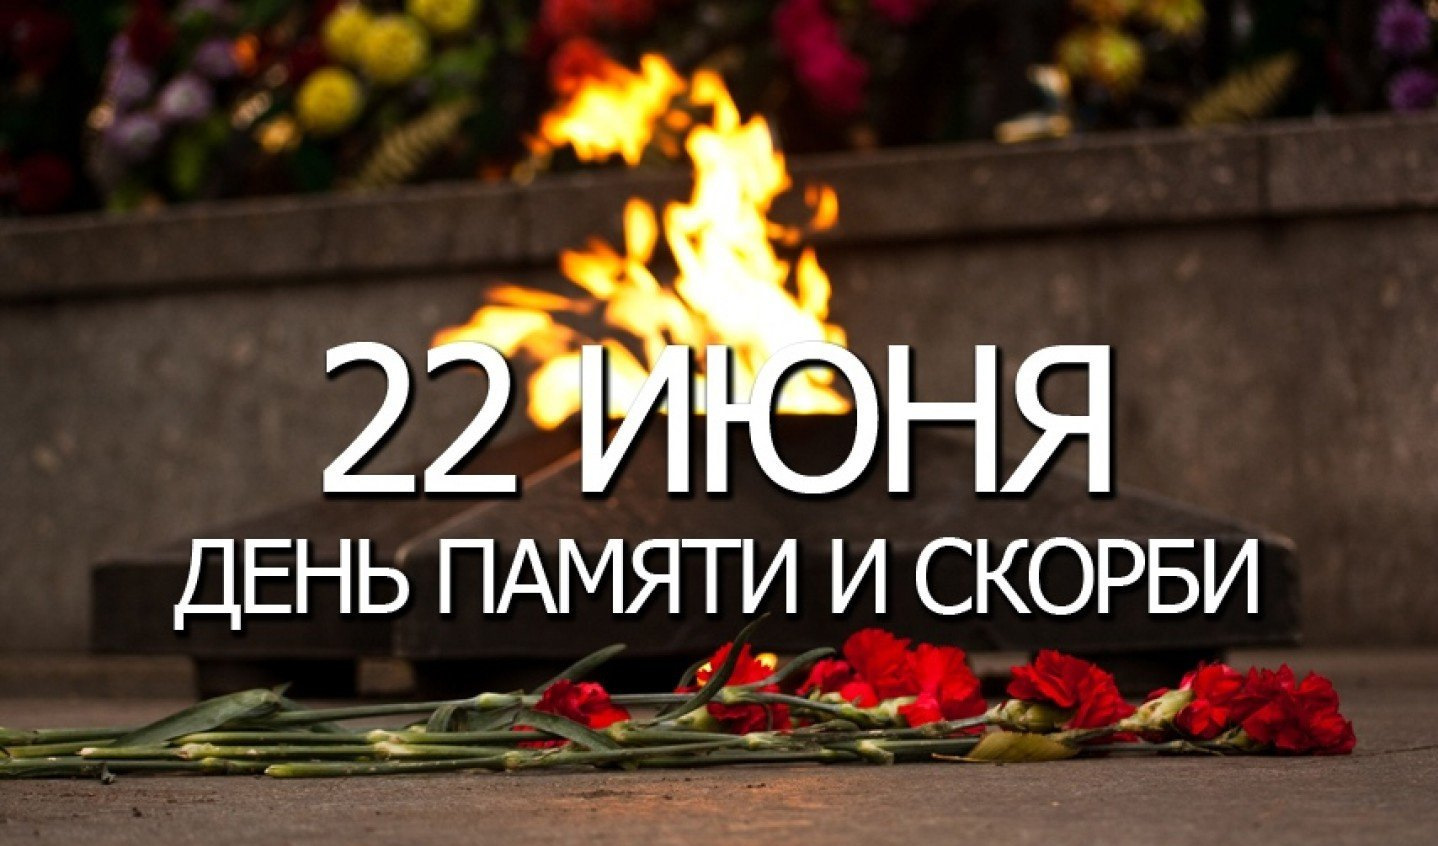 22 июня в 22 00. День памяти и скорби. 22 Июня день памяти. День памяти и скорби — день начала Великой Отечественной войны. День скорби 22 июня.